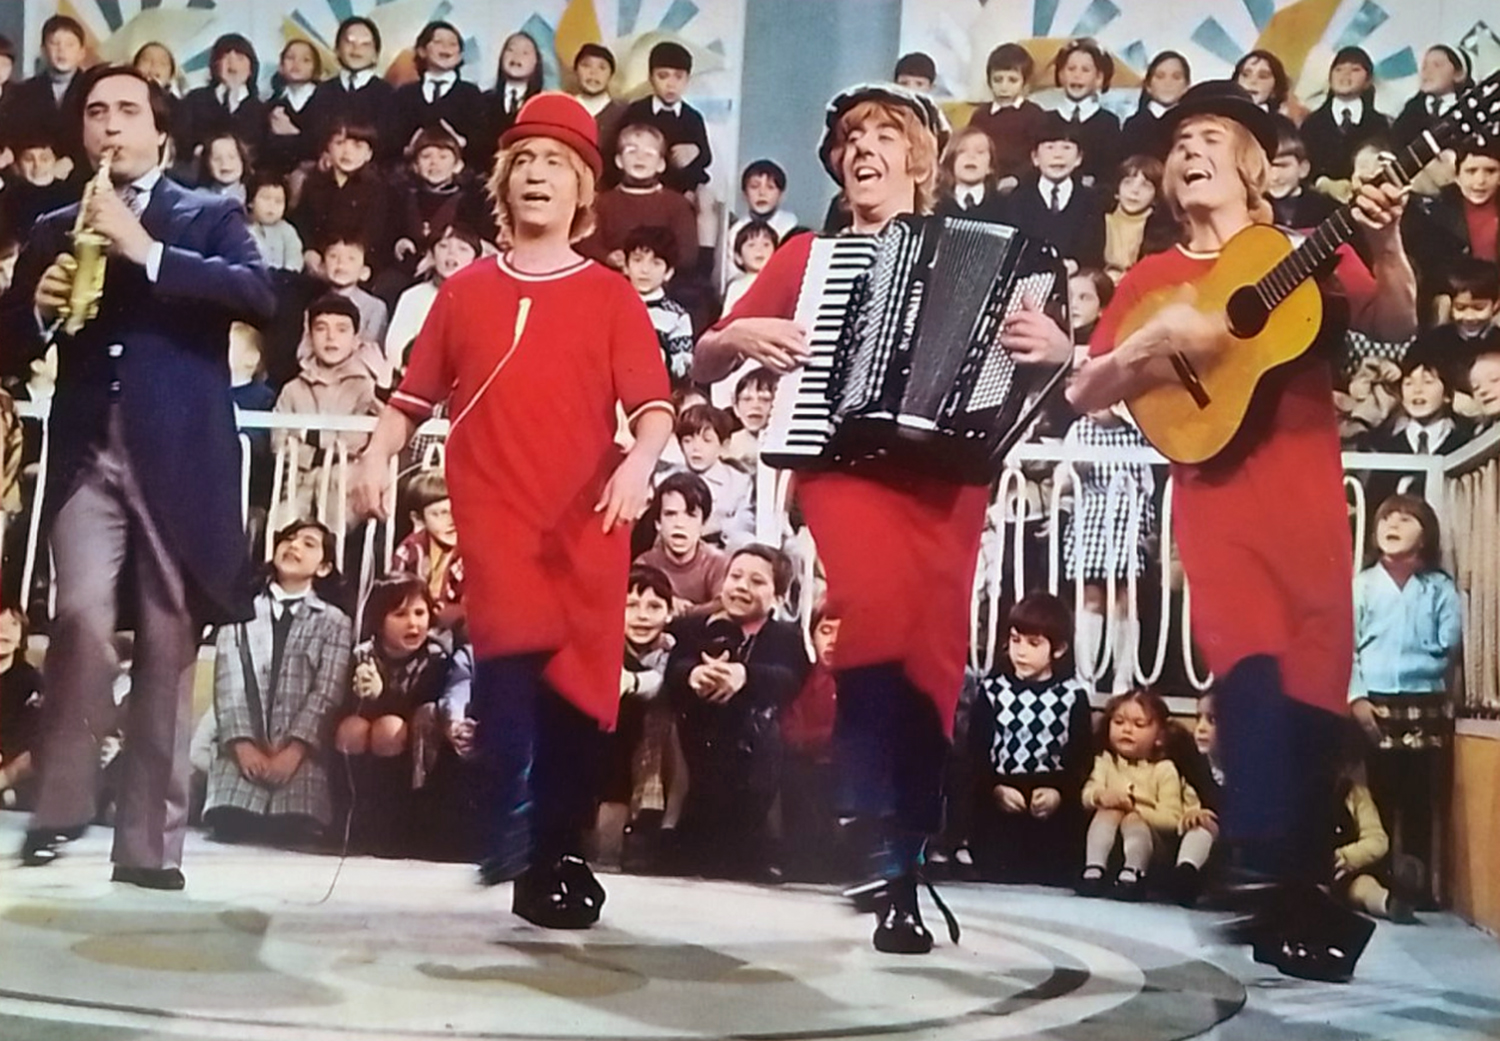 Gaby, Fofó, Miliki, and Fofito (c.1975)